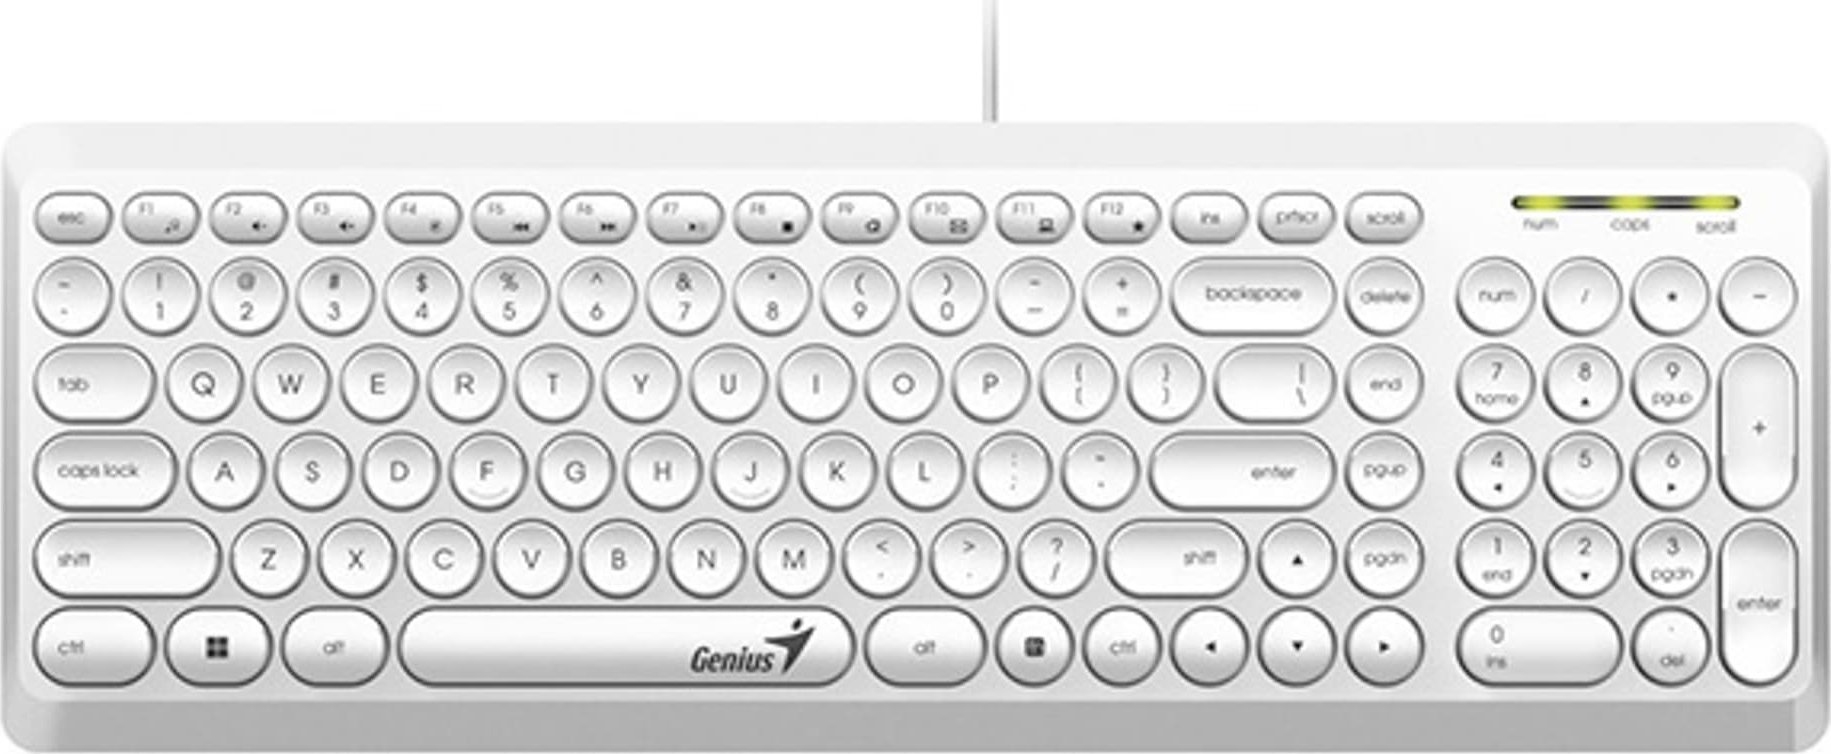 Tastatură Genius Genius Slimstar Q200, tastatură CZ/SK, clasică, silențioasă, tip cu fir (USB), albă